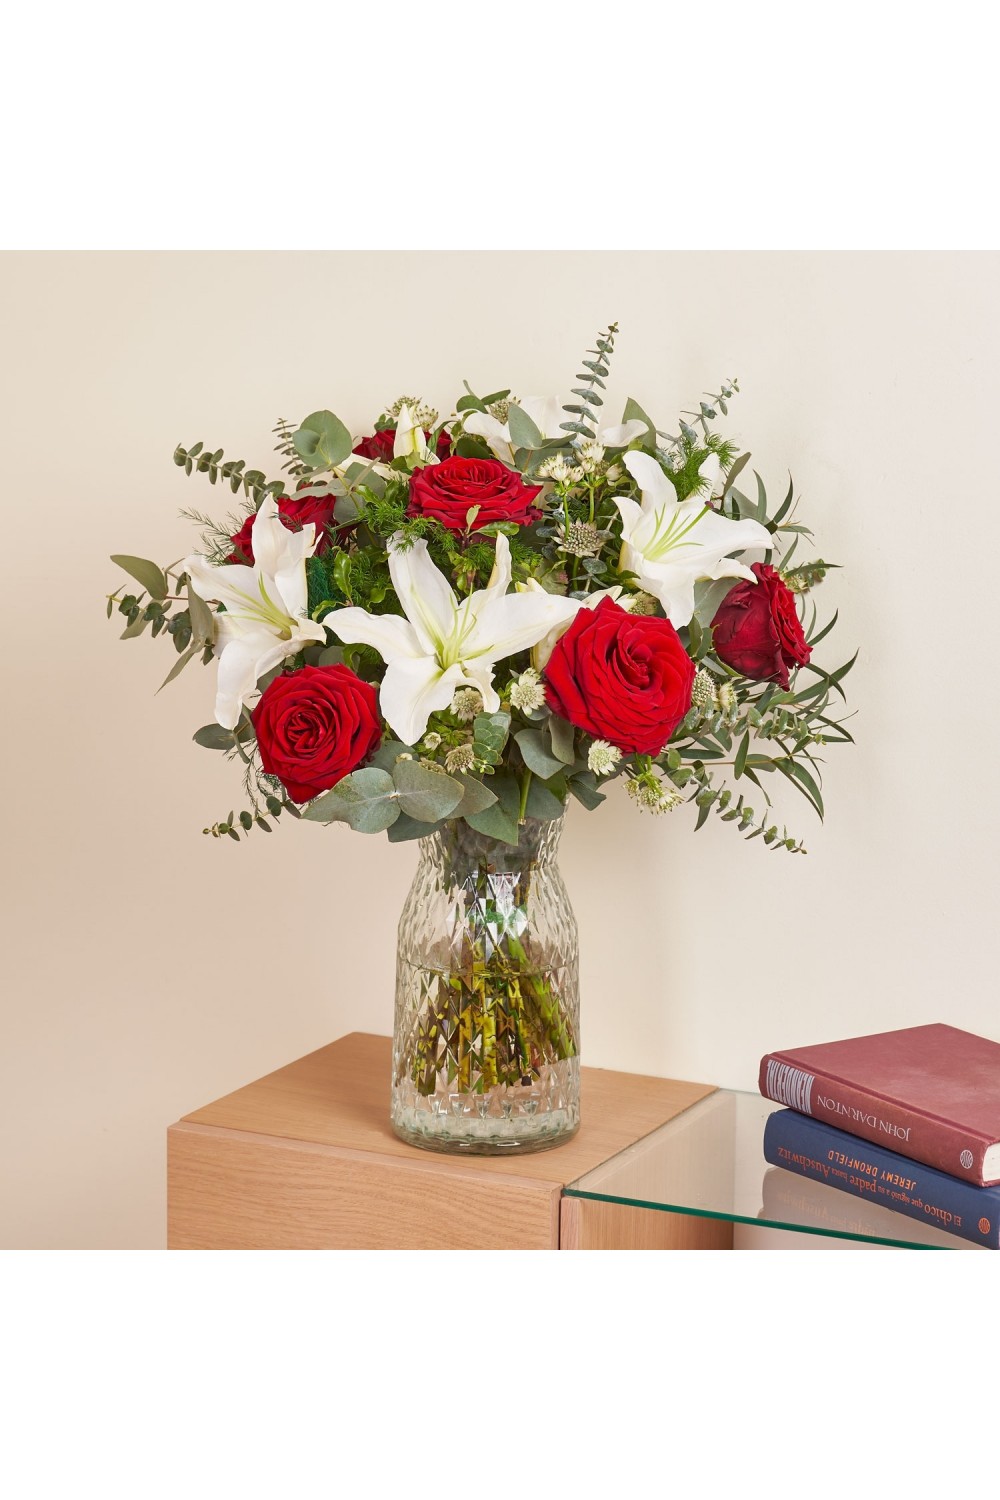 Enviar flores - Arreglo de rosas con Liliums - Interflora